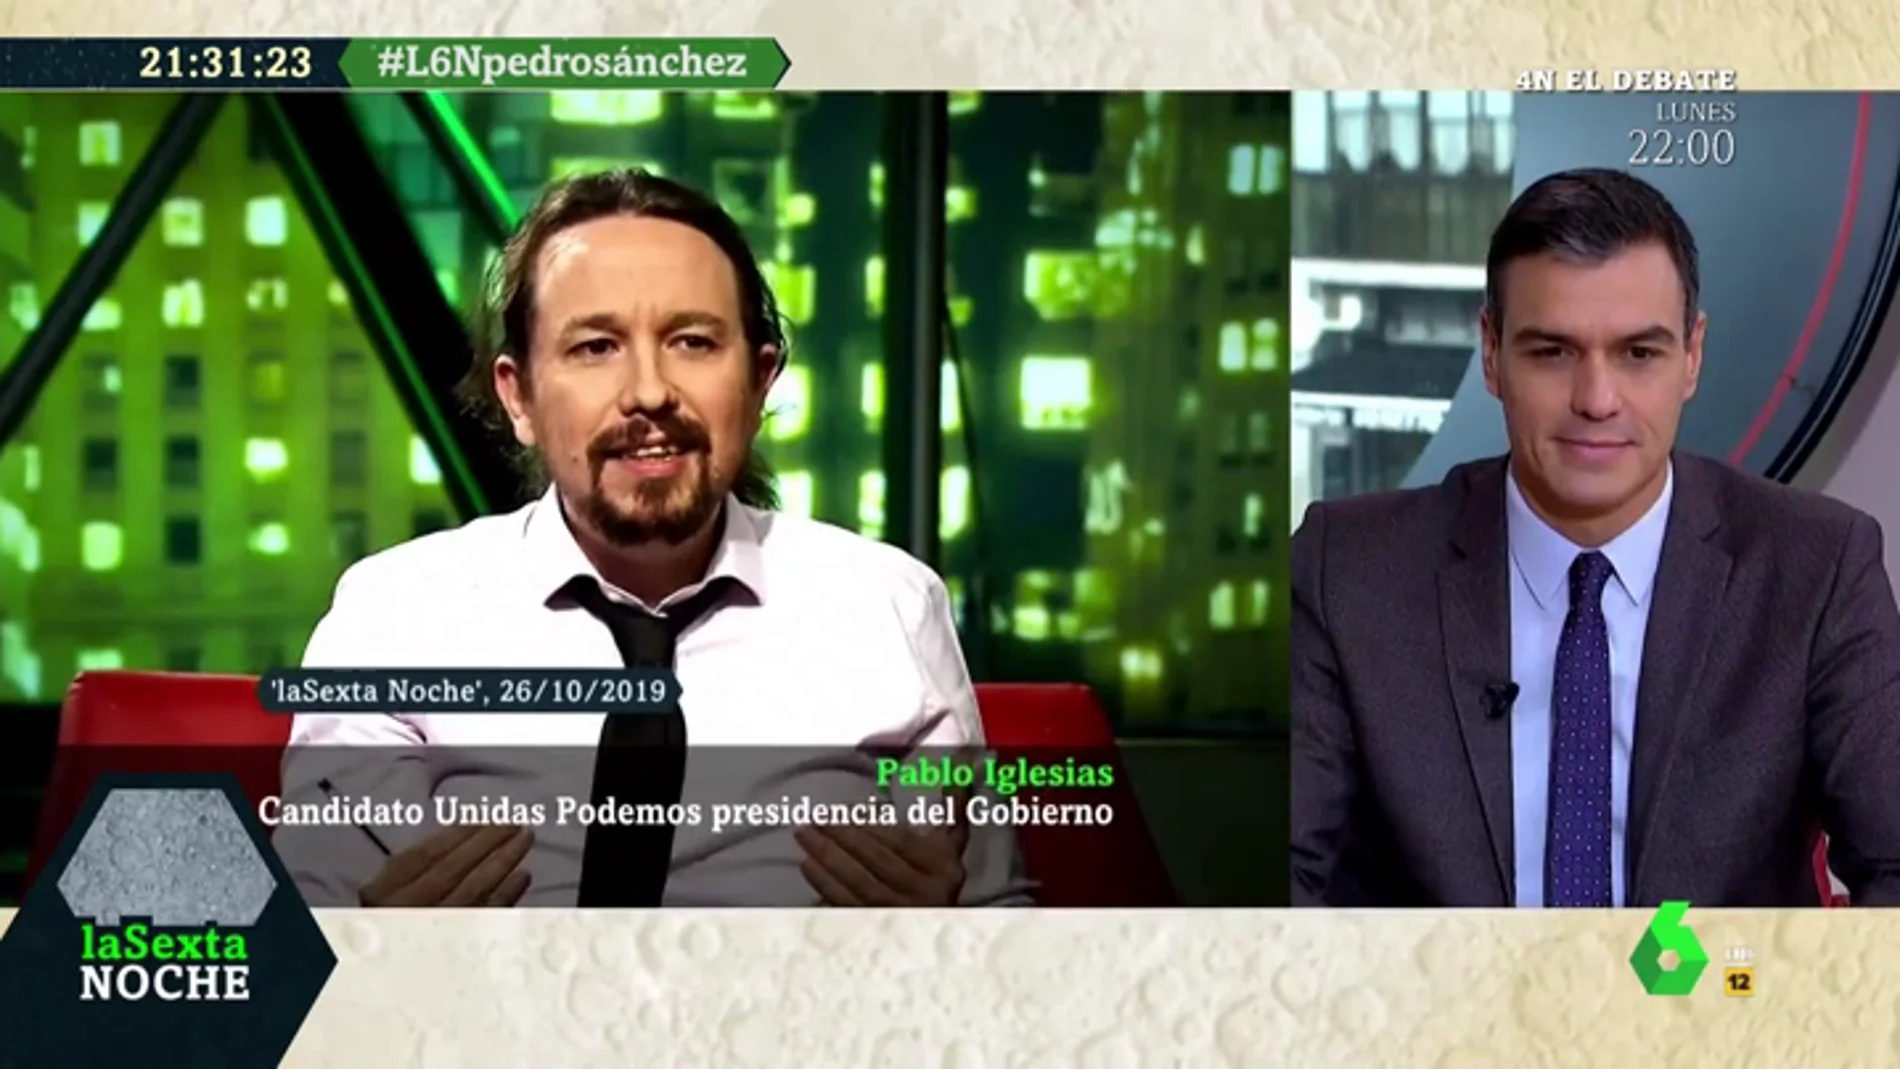 La pregunta de Sánchez a Iglesias: "¿Va a seguir sumando sus votos a la derecha y la ultraderecha para bloquear un gobierno progresista?"